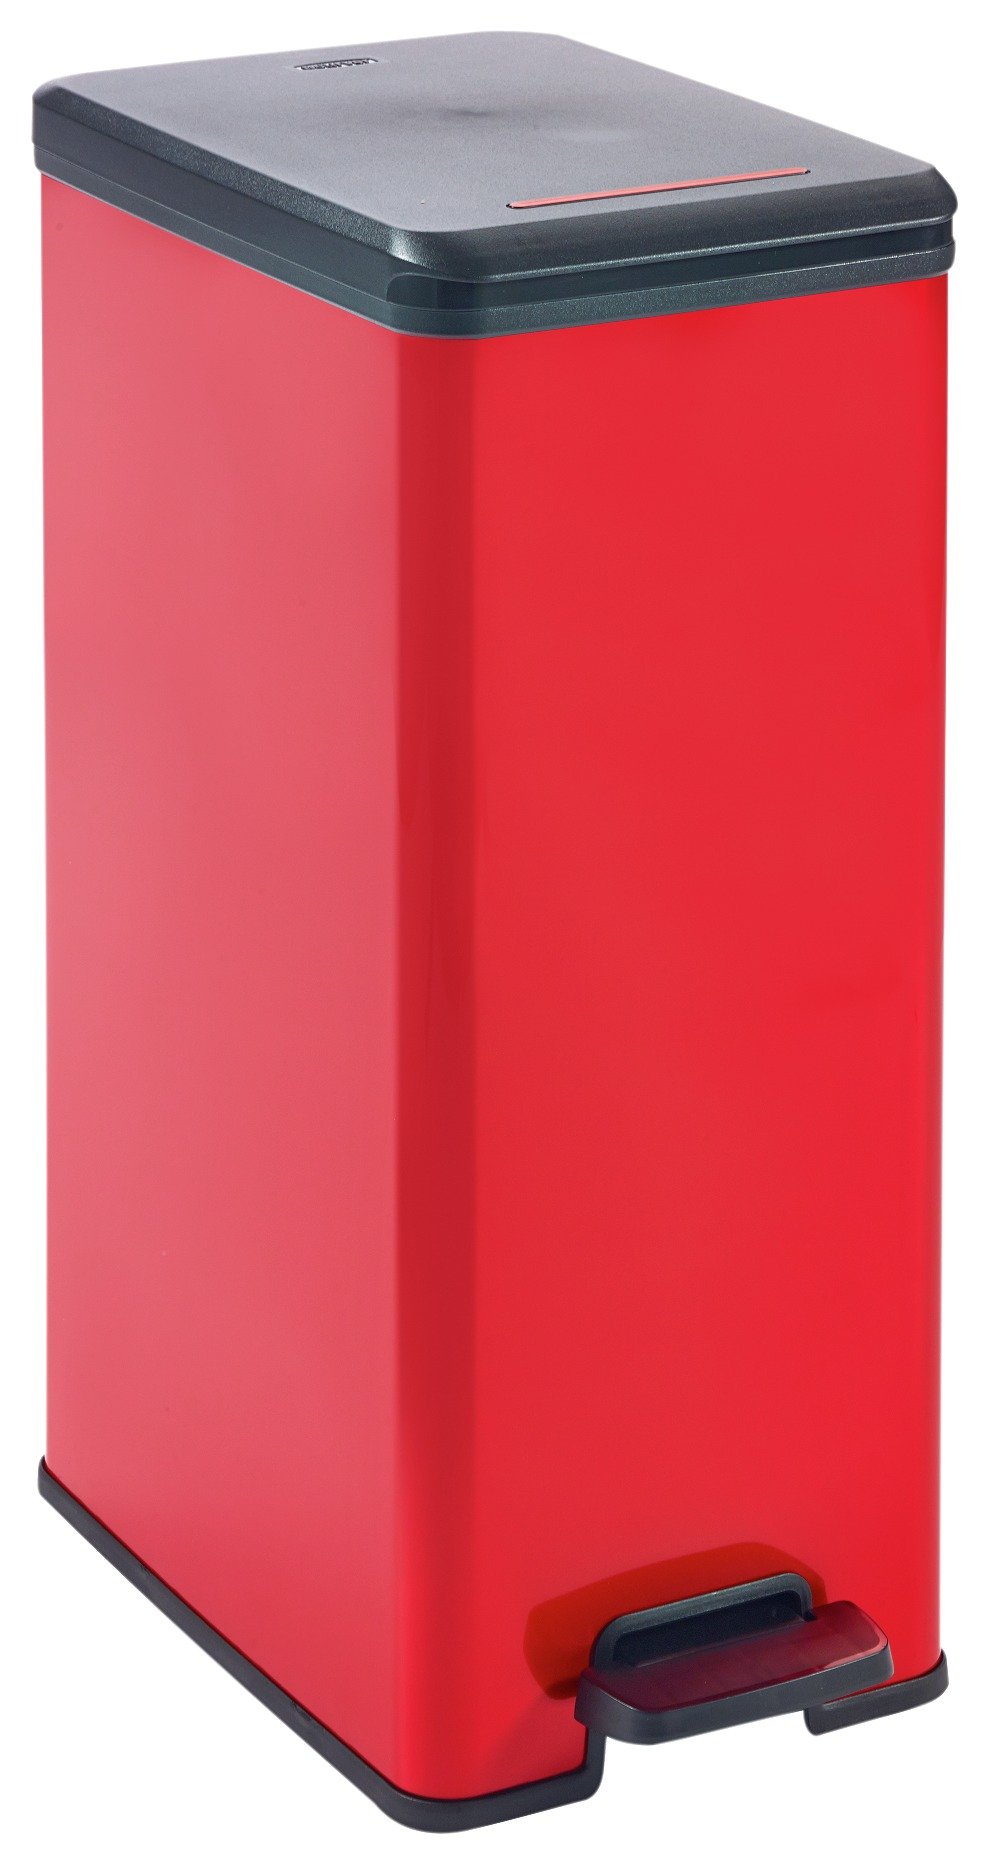 Curver Deco 40 Litre Slim Bin - Red